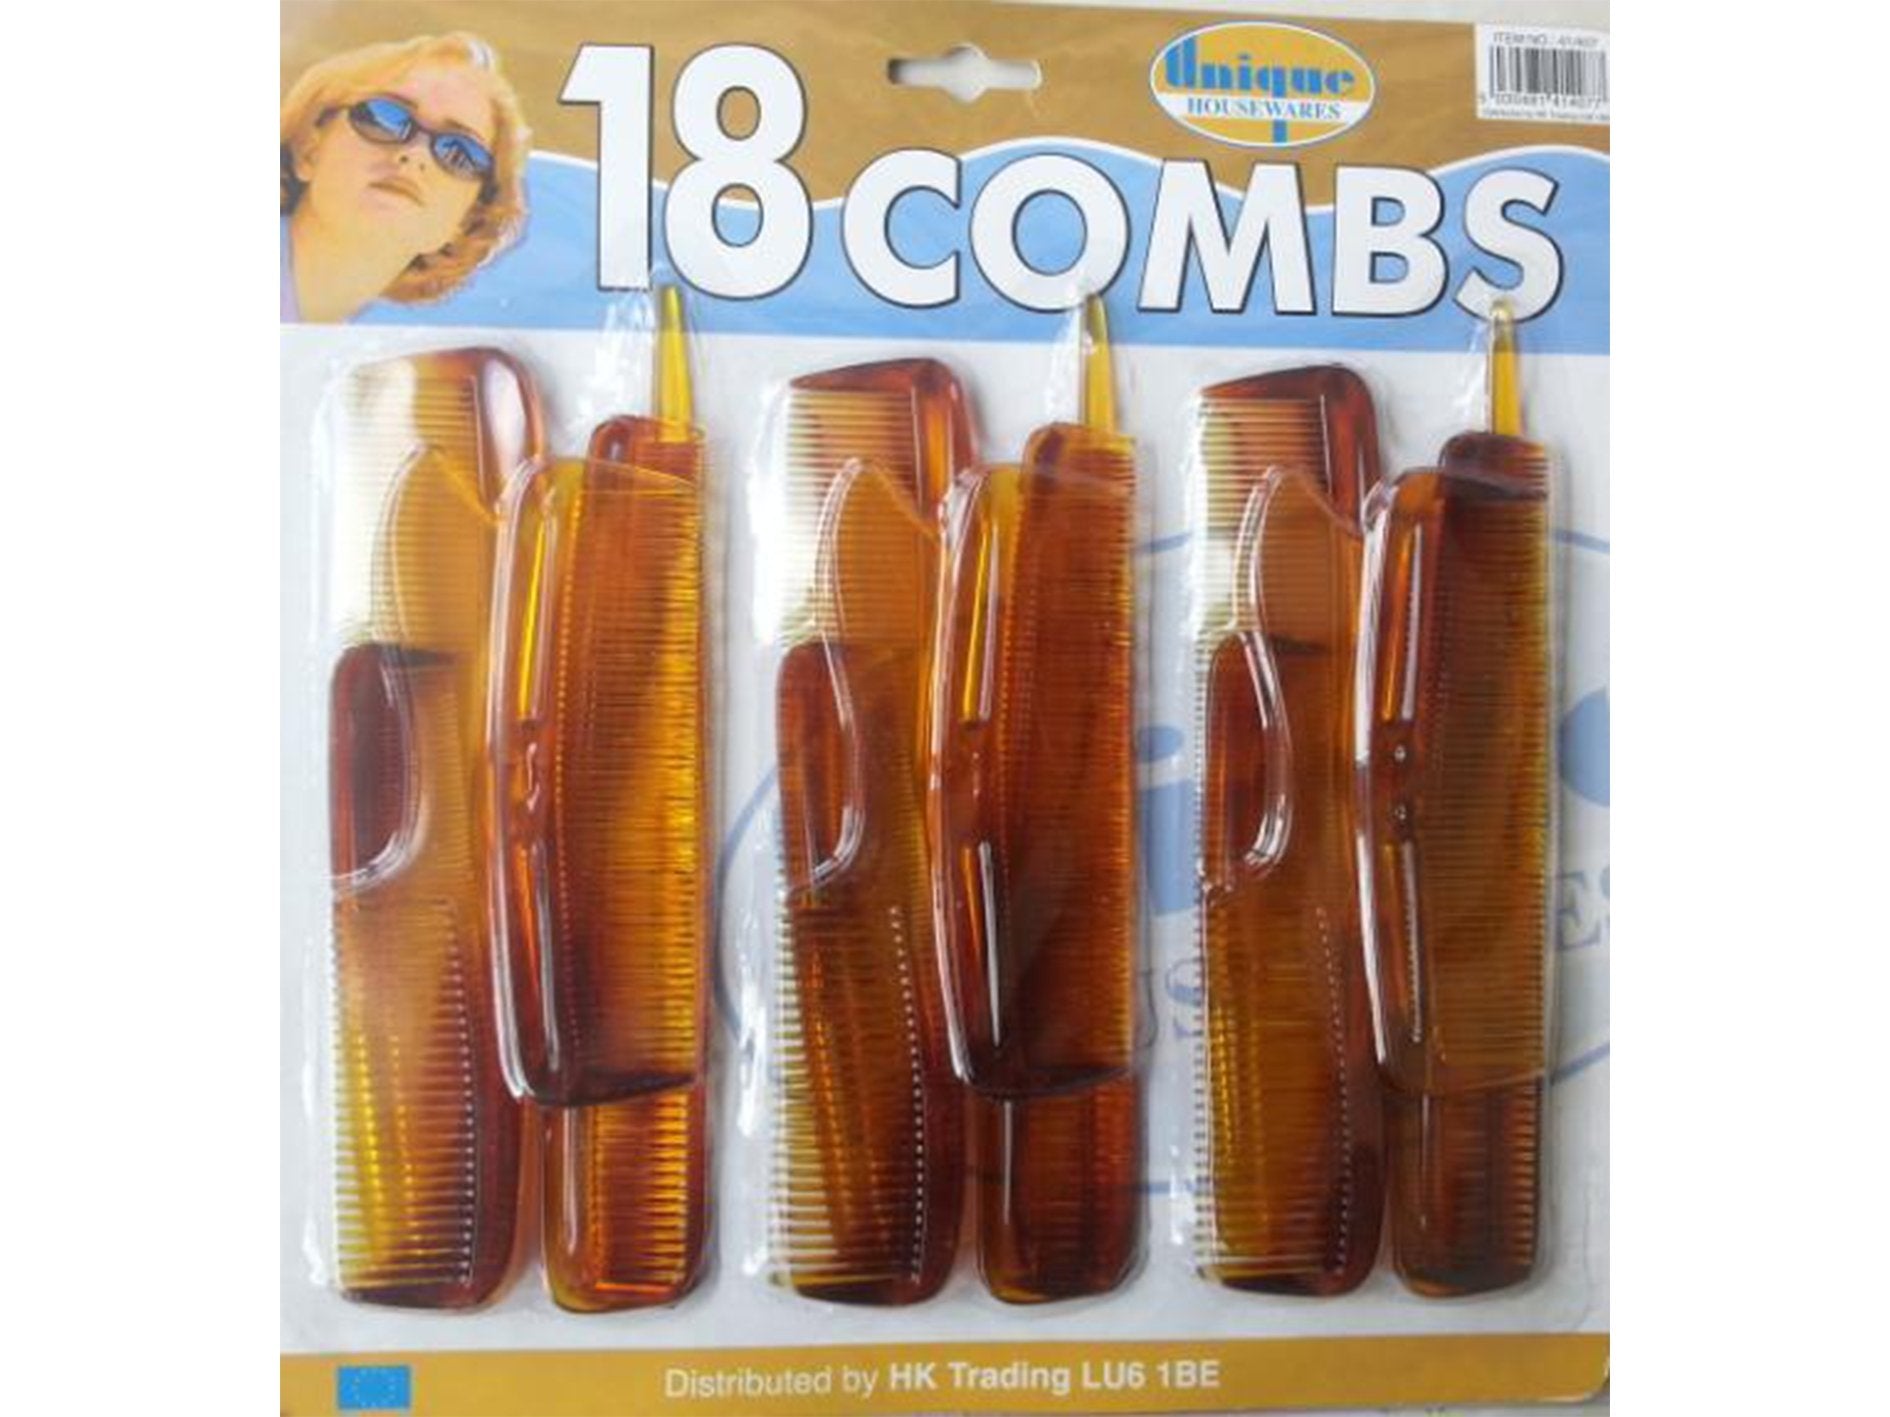 18 Combs Assorted - VIR Wholesale